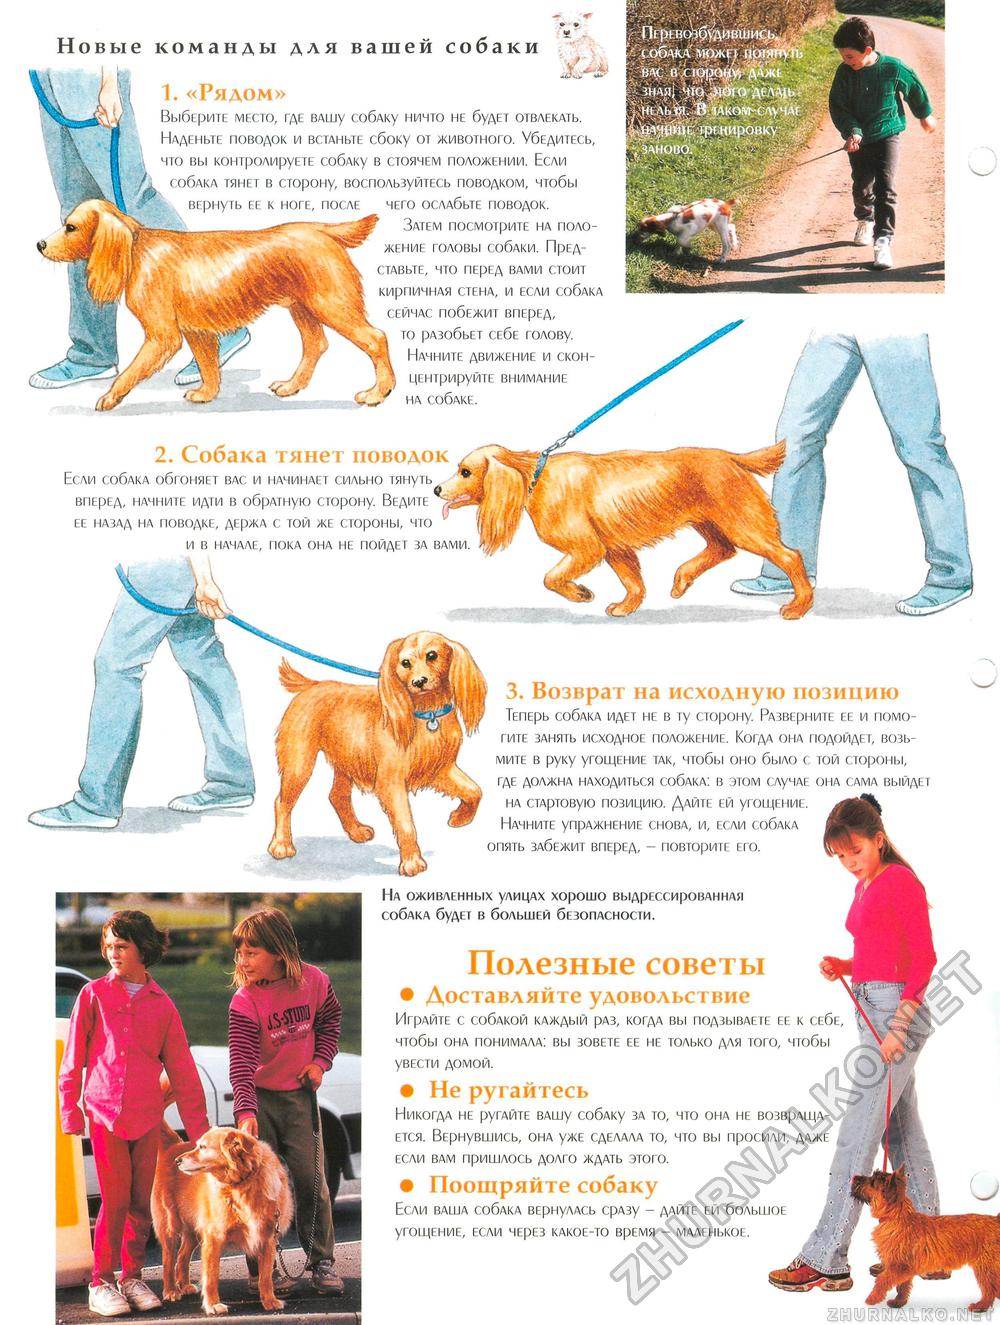 Инструкция по правильному воспитанию щенков и взрослых собак